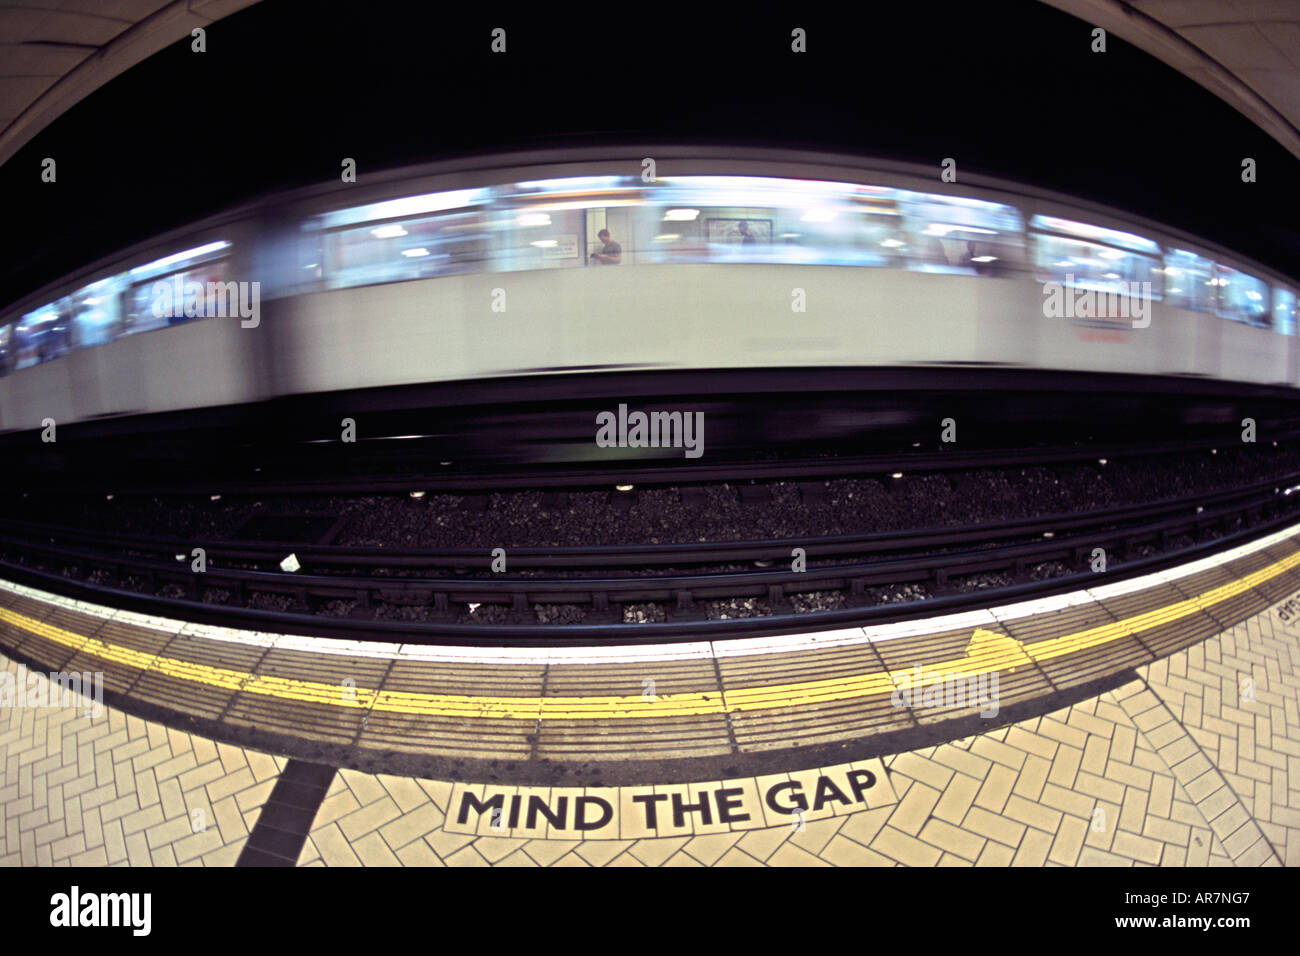 District Line u-Bahn vorbei an einer Plattform in London. Fotografiert mit einem Fisheye-Objektiv. Stockfoto